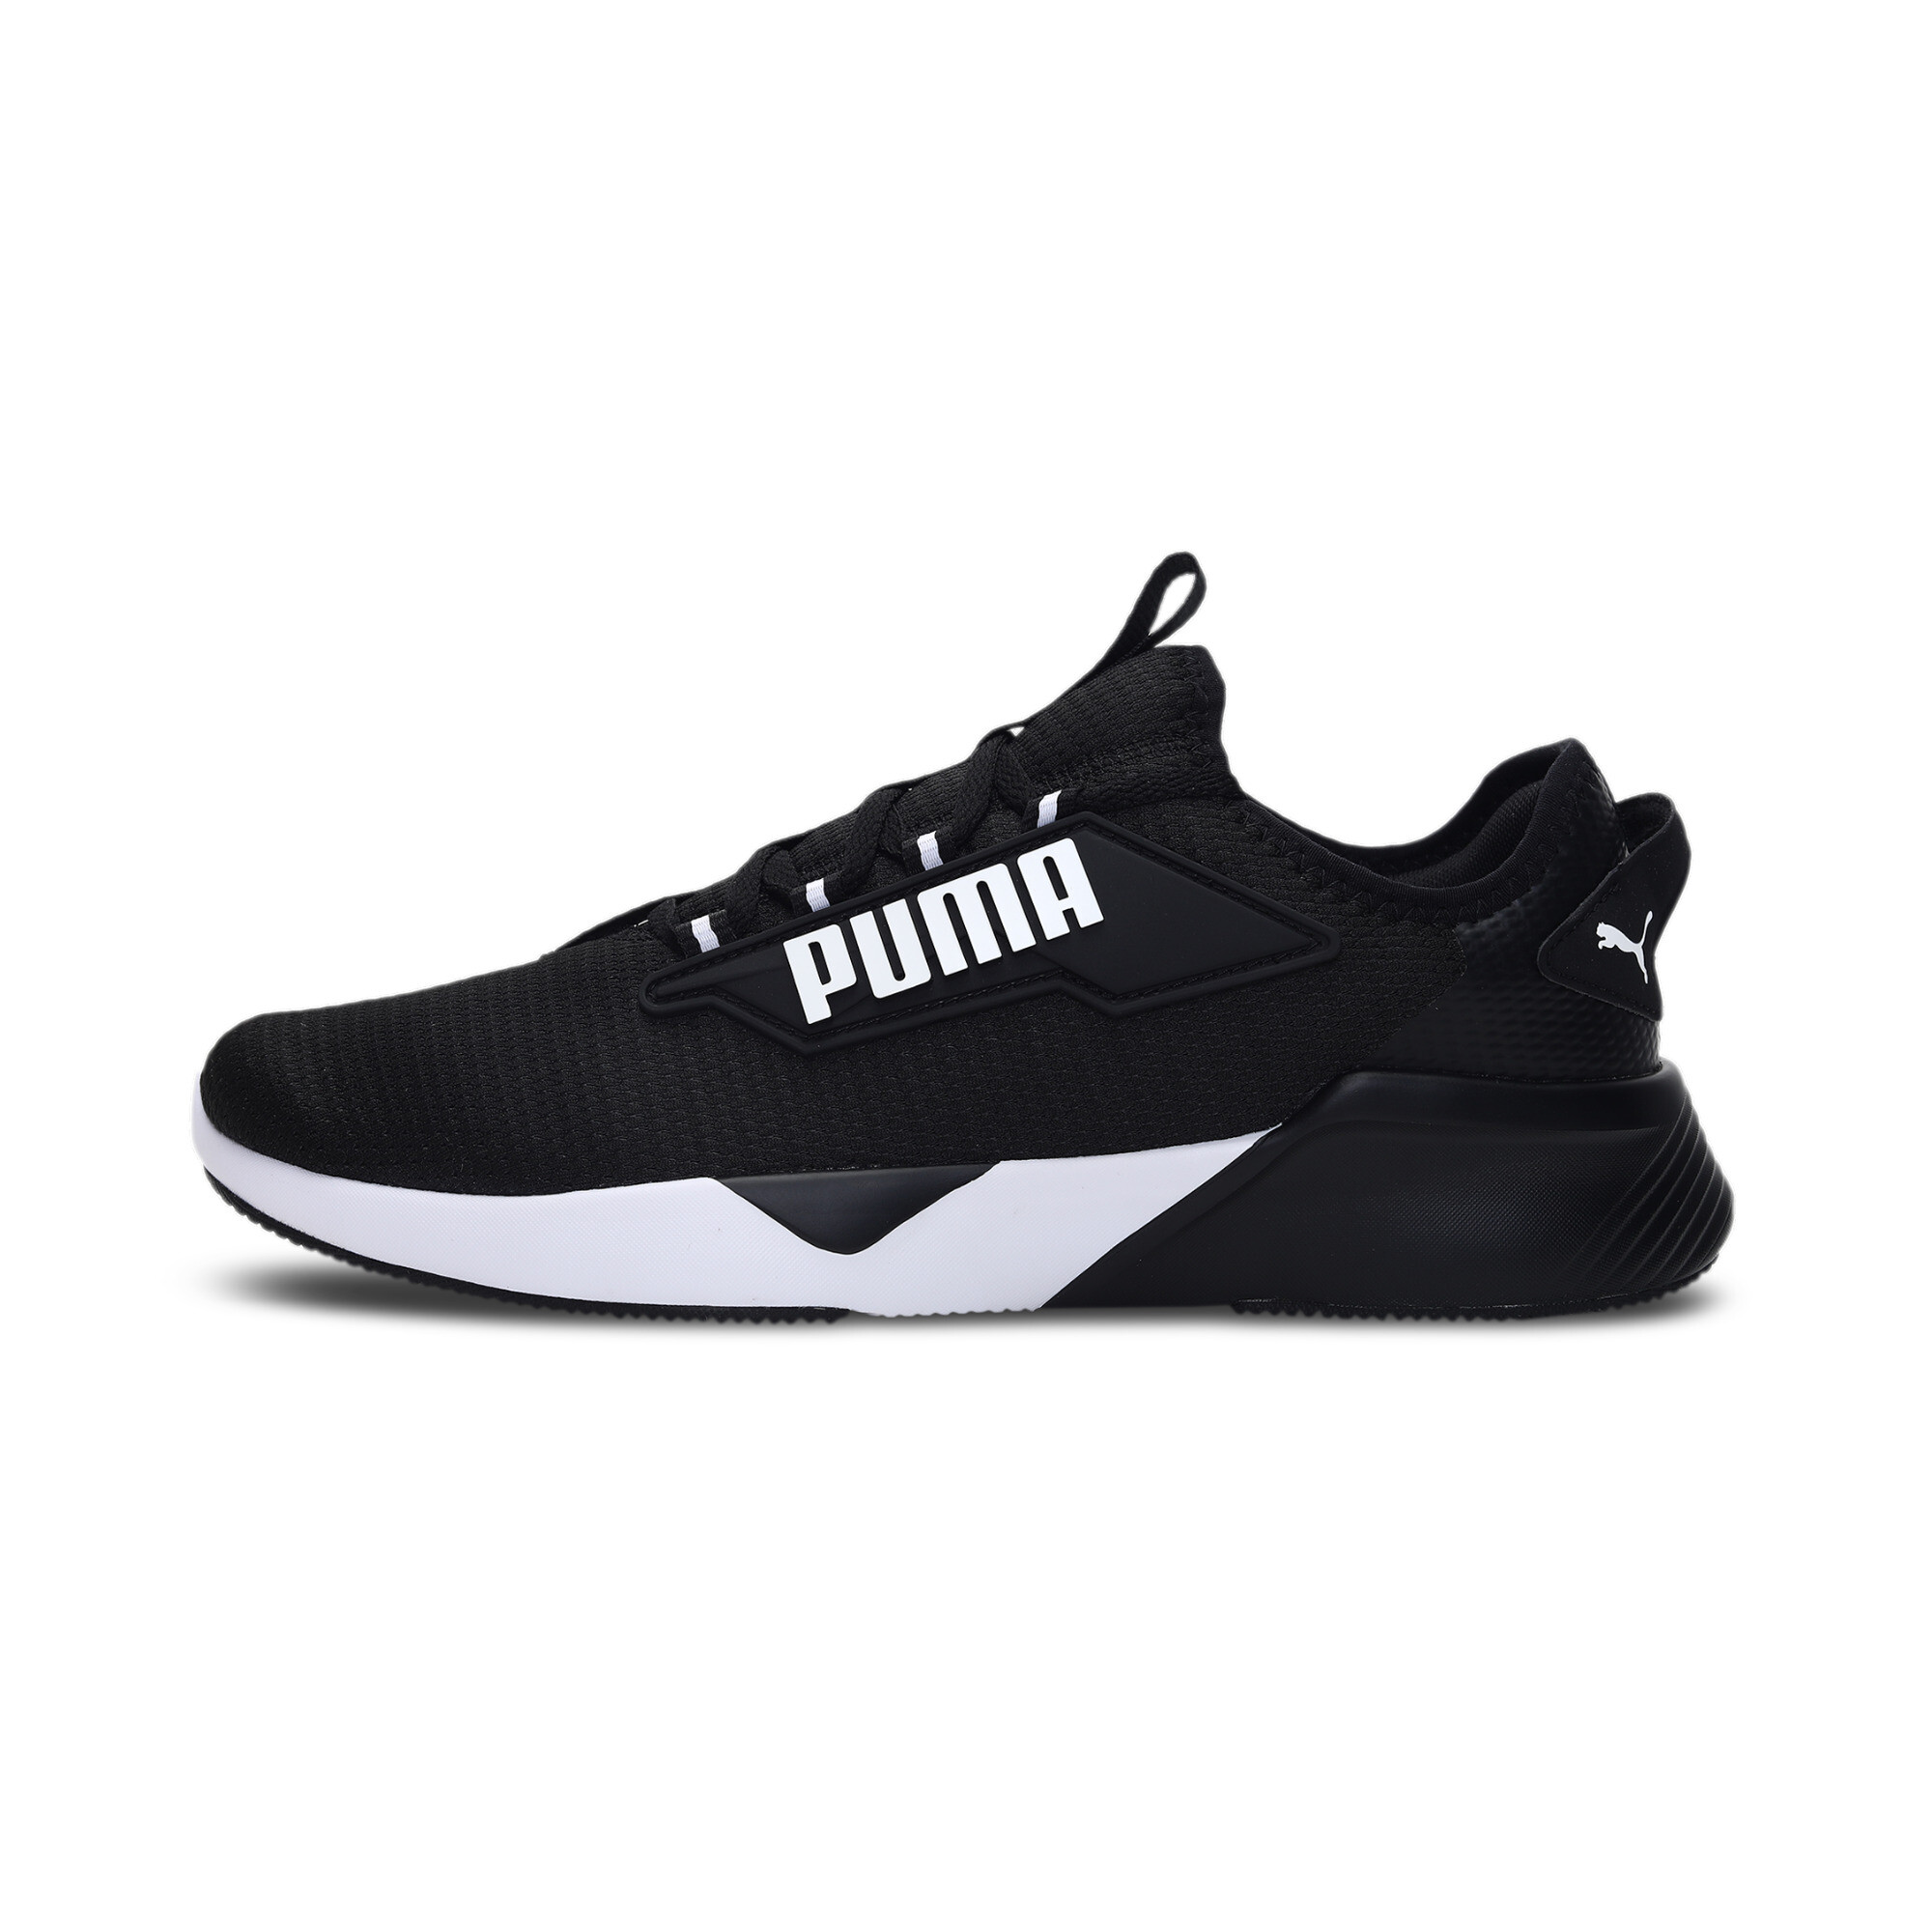 PUMA Retaliate 2 Running Shoes Unisex | eBay